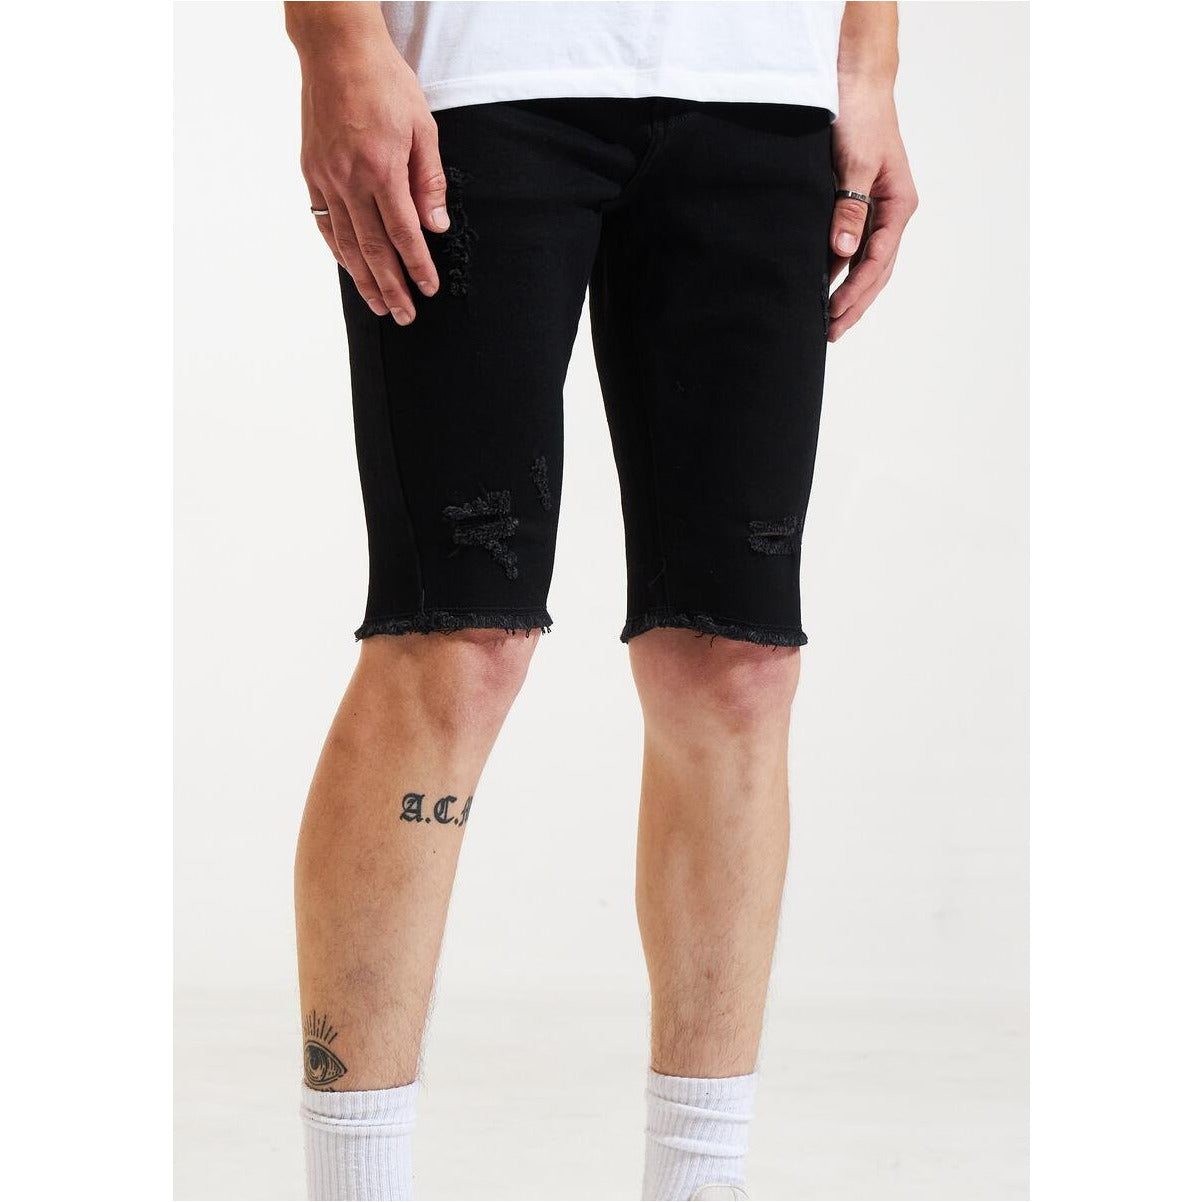 Karter Collection Leon Black Denim Shorts (KARPK-308)